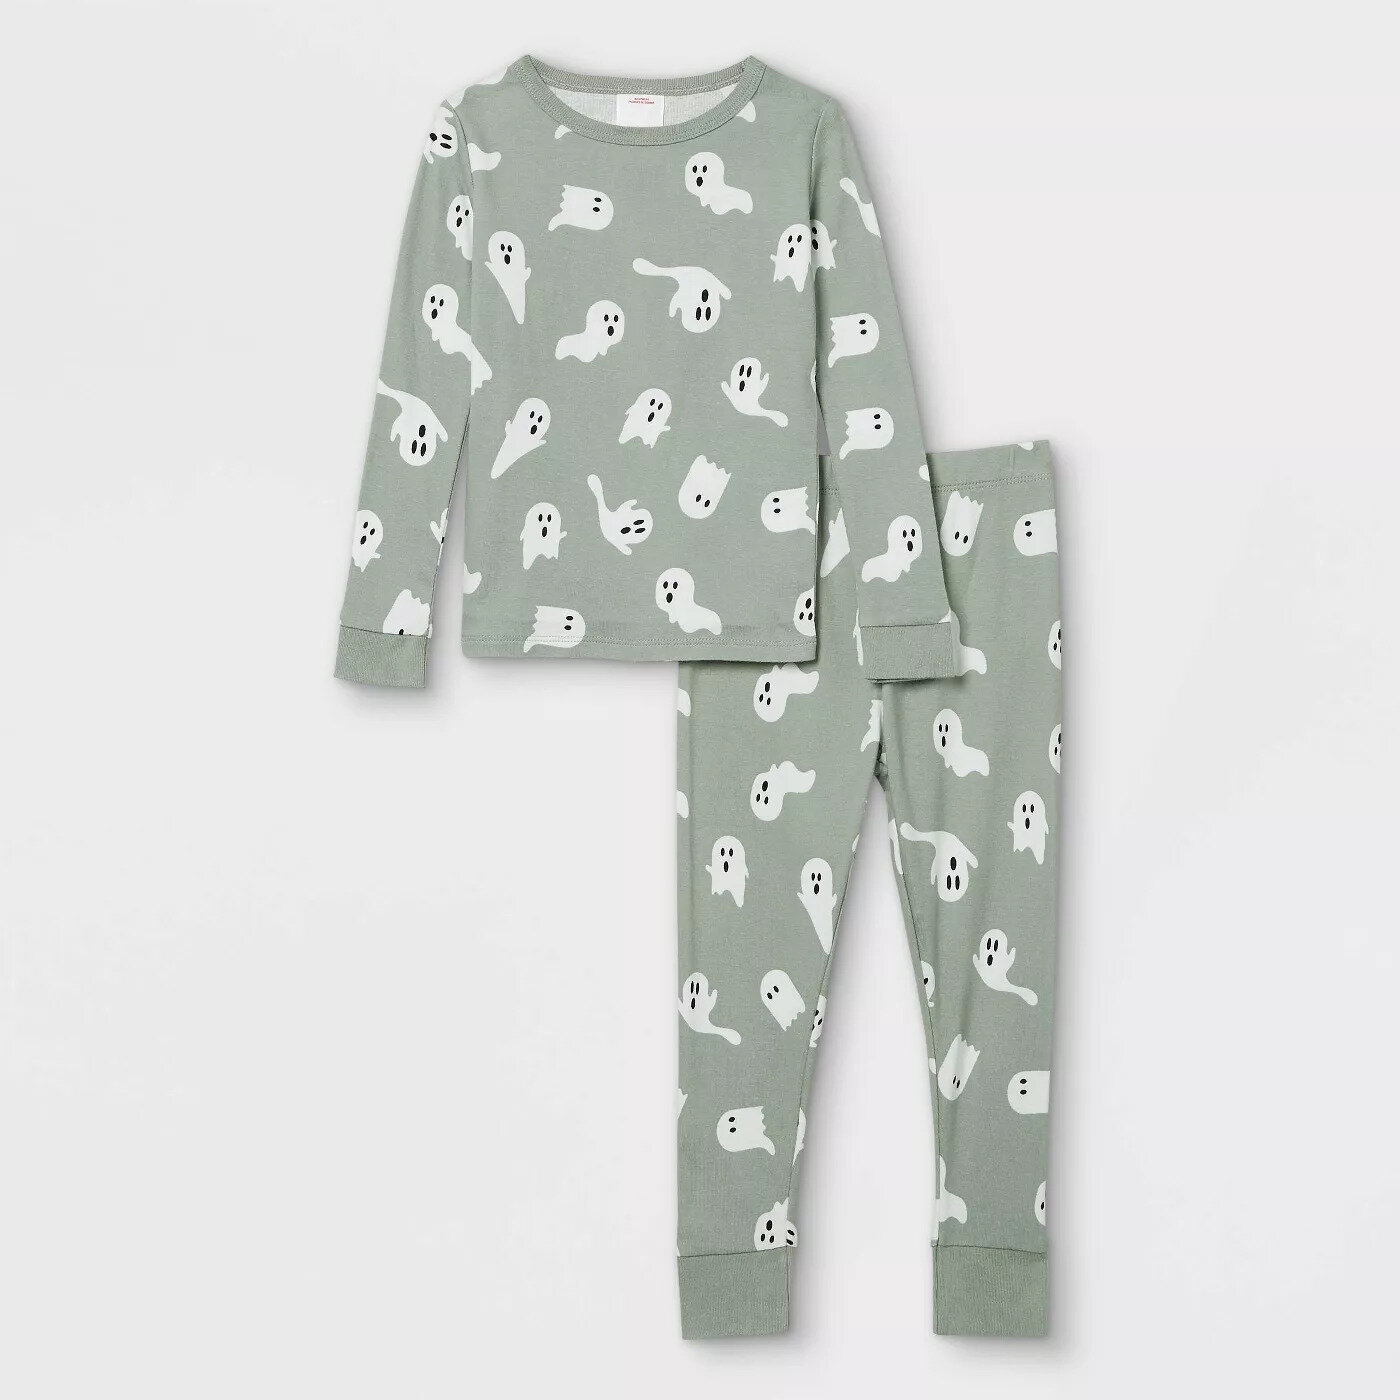 Toddler Halloween Ghost Print Matching Family Pajama Set - Target.jpg